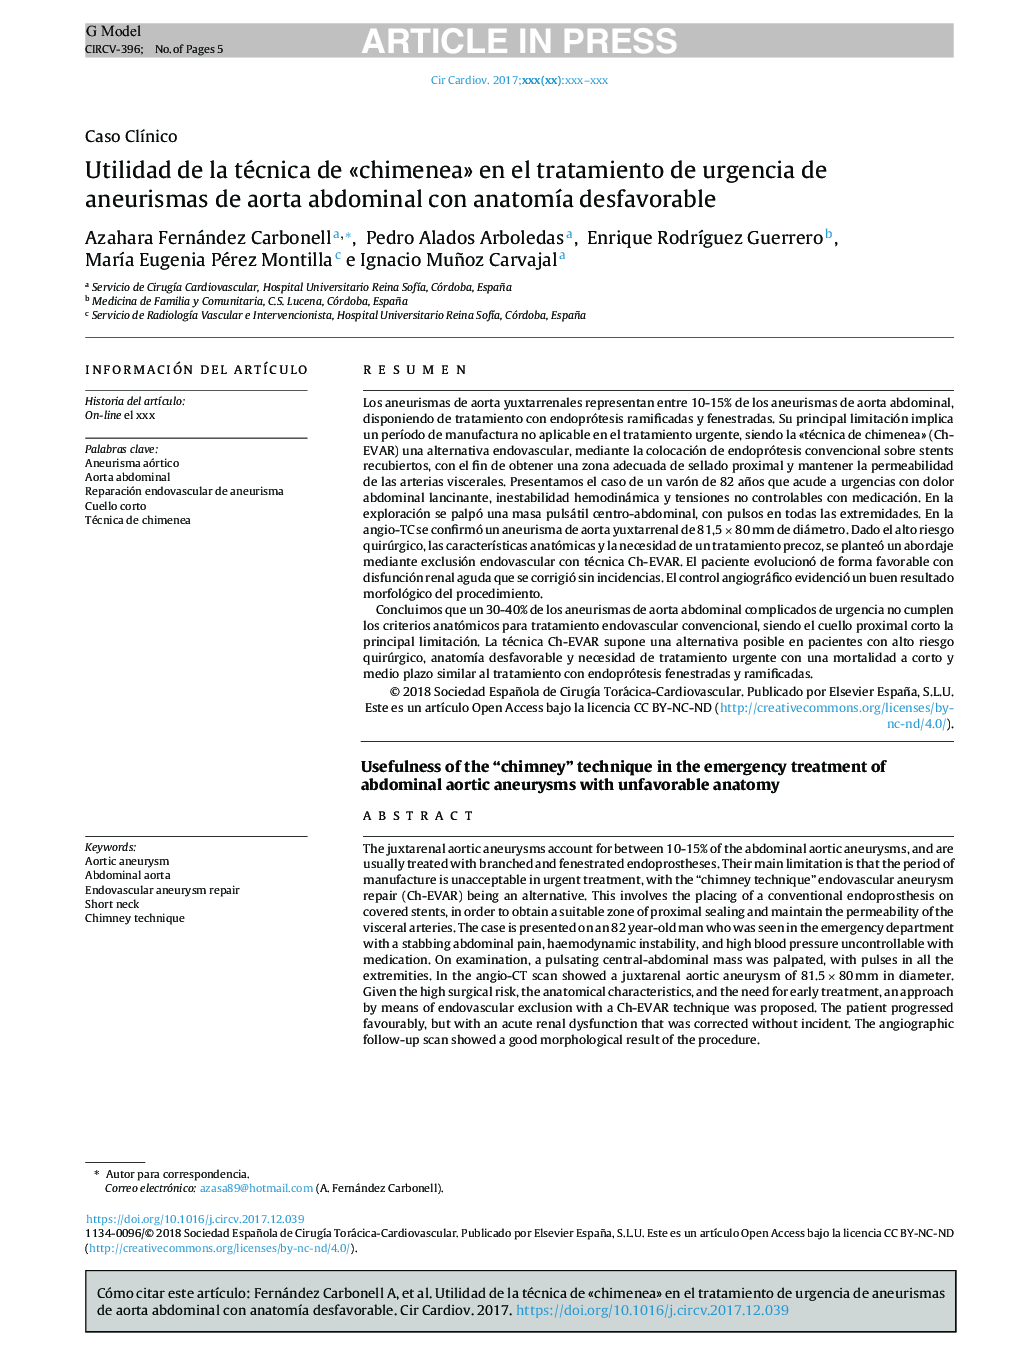 Utilidad de la técnica de Â«chimeneaÂ» en el tratamiento de urgencia de aneurismas de aorta abdominal con anatomÃ­a desfavorable